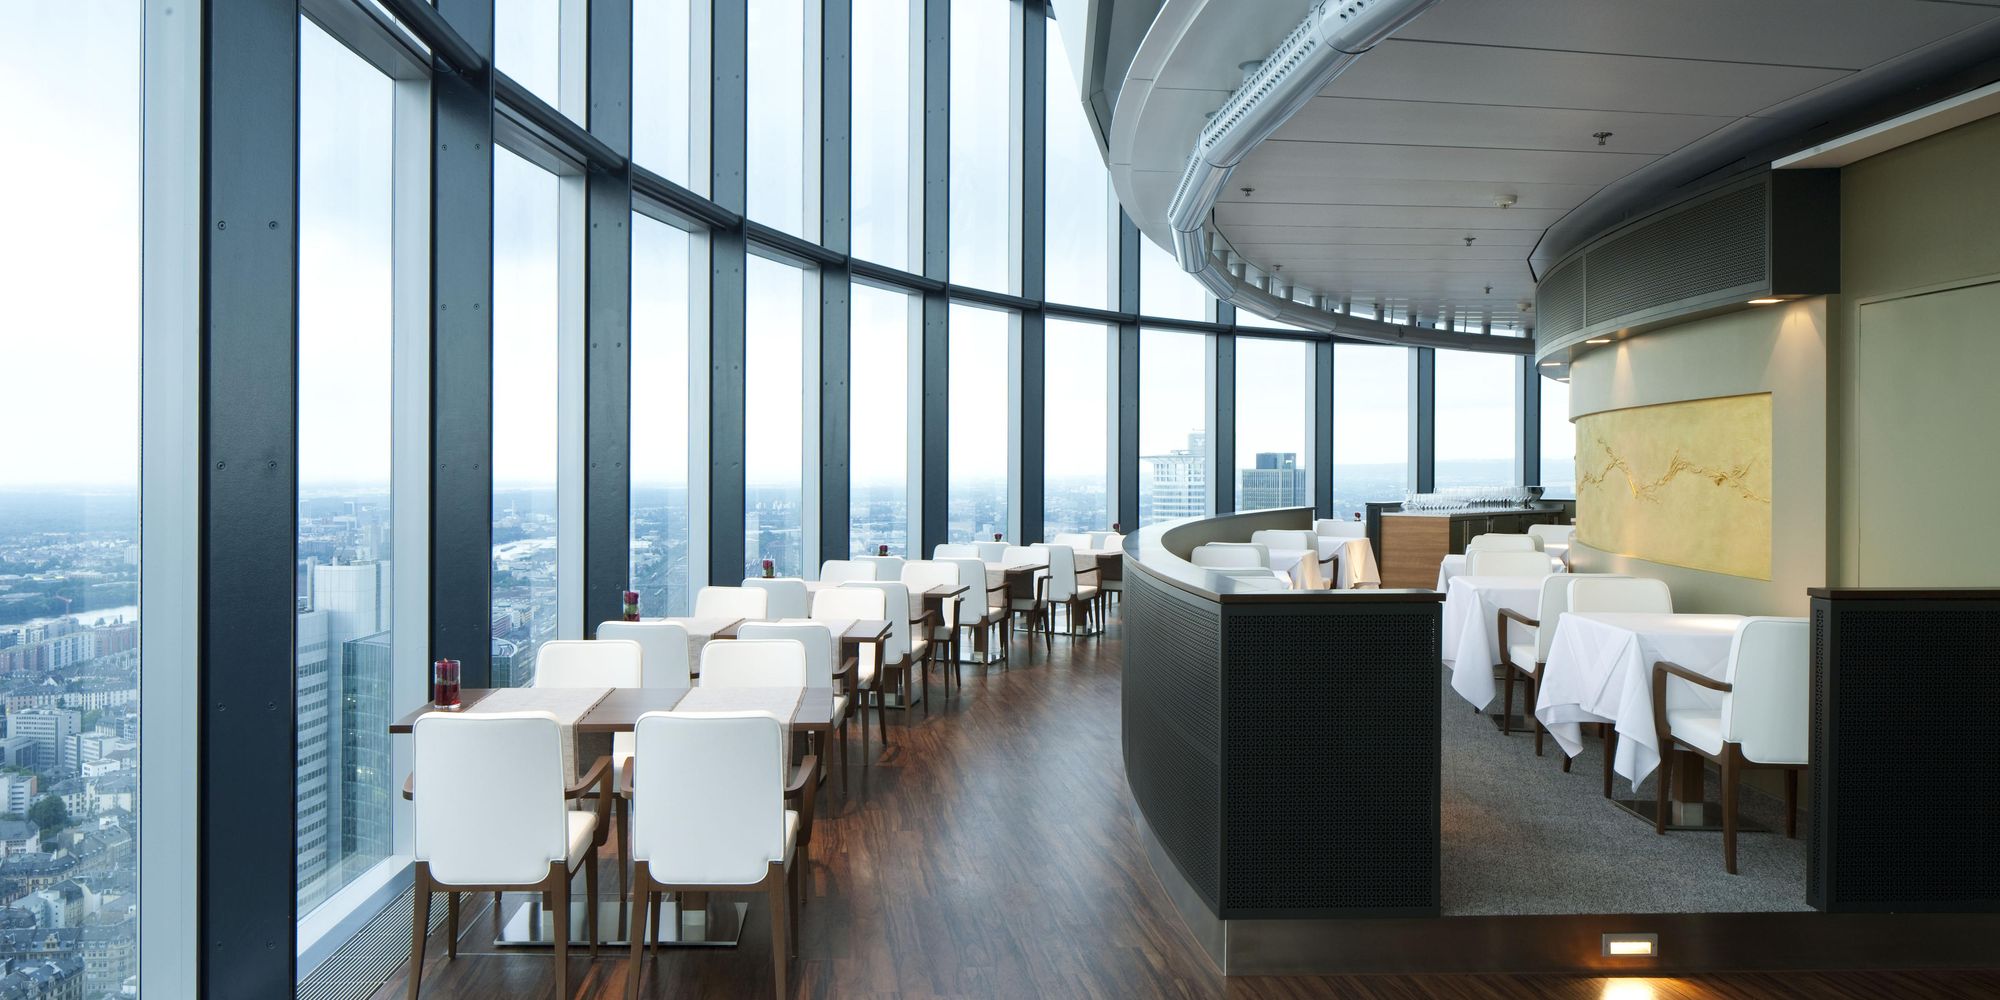 Main Tower in Frankfurt — Innenausbau Gastronomie mit Fernblick aus dem 41. Stock